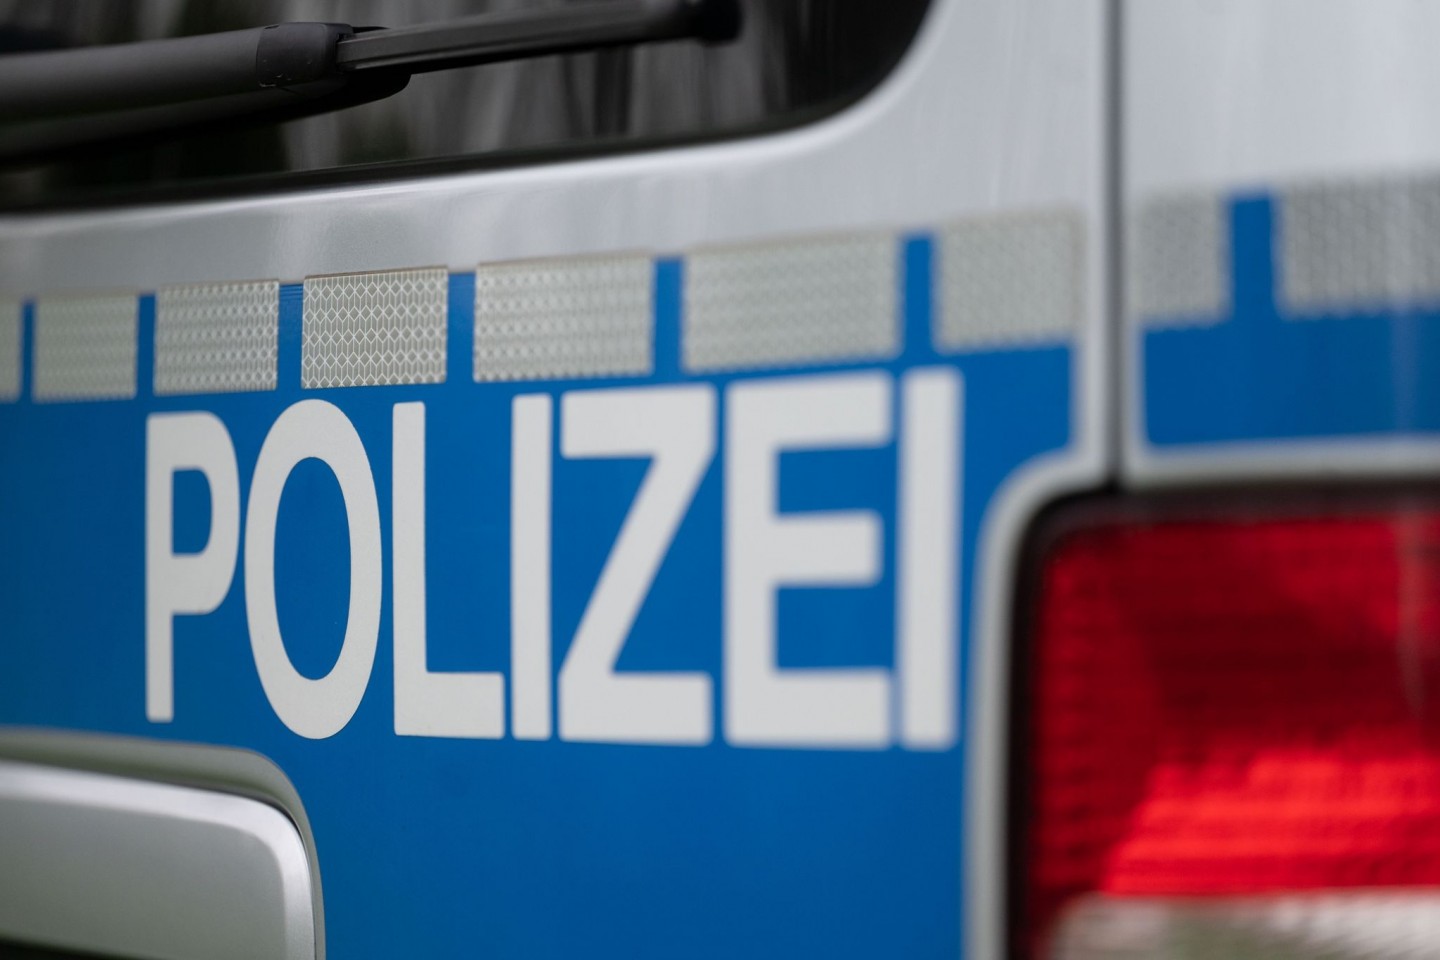 Nach einer Flucht soll ein Auto in Berlin mit mehreren Polizeifahrzeugen kollidiert sein. (Symbolbild)